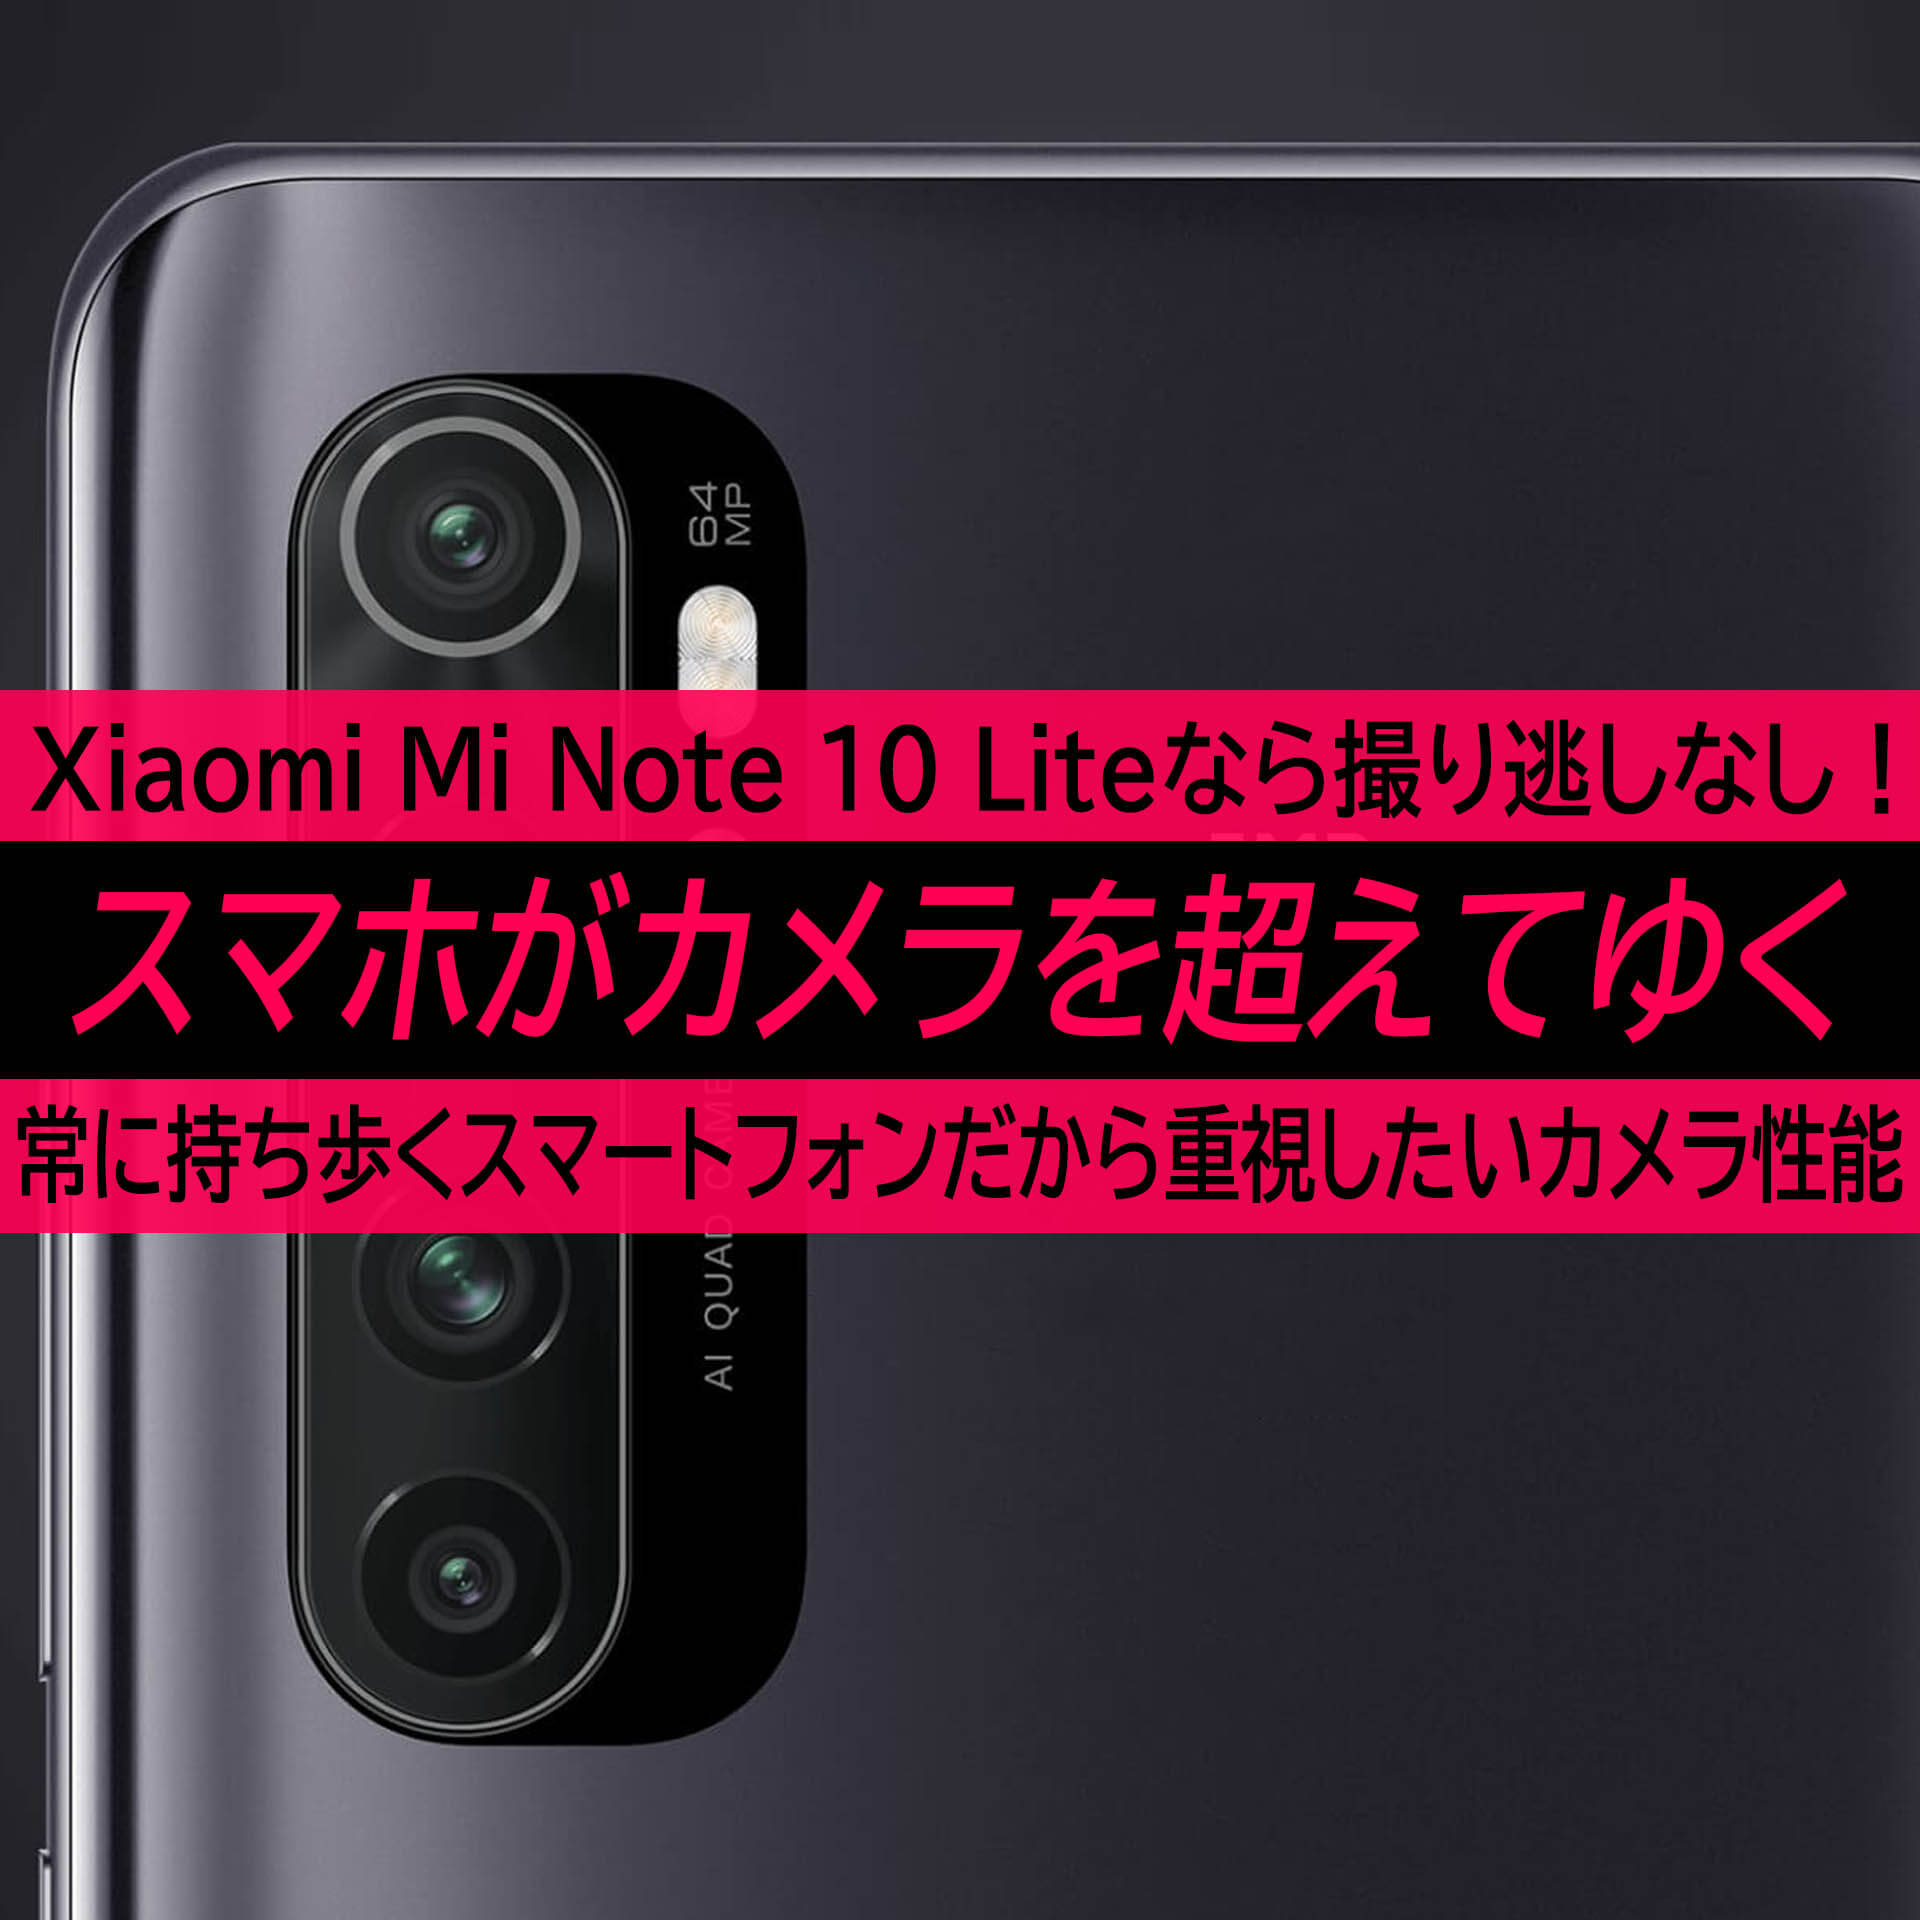 Xiaomi Mi Note 10 Liteは普段持ち歩くから撮り逃しの無い高画質カメラ スマホがカメラを超えてゆく